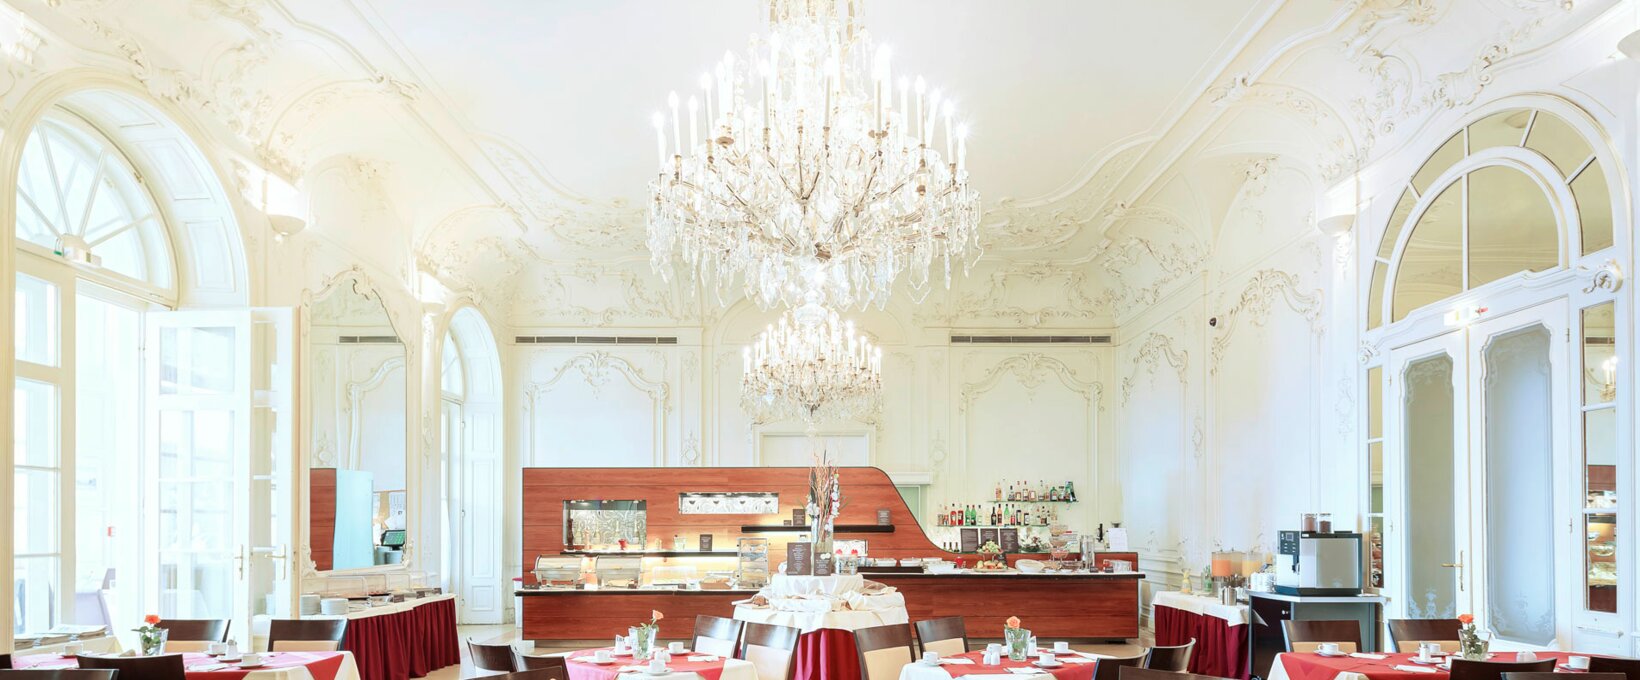 Breakfast restaurant with buffet | Hotel Schloss Wilhelminenberg in Vienna